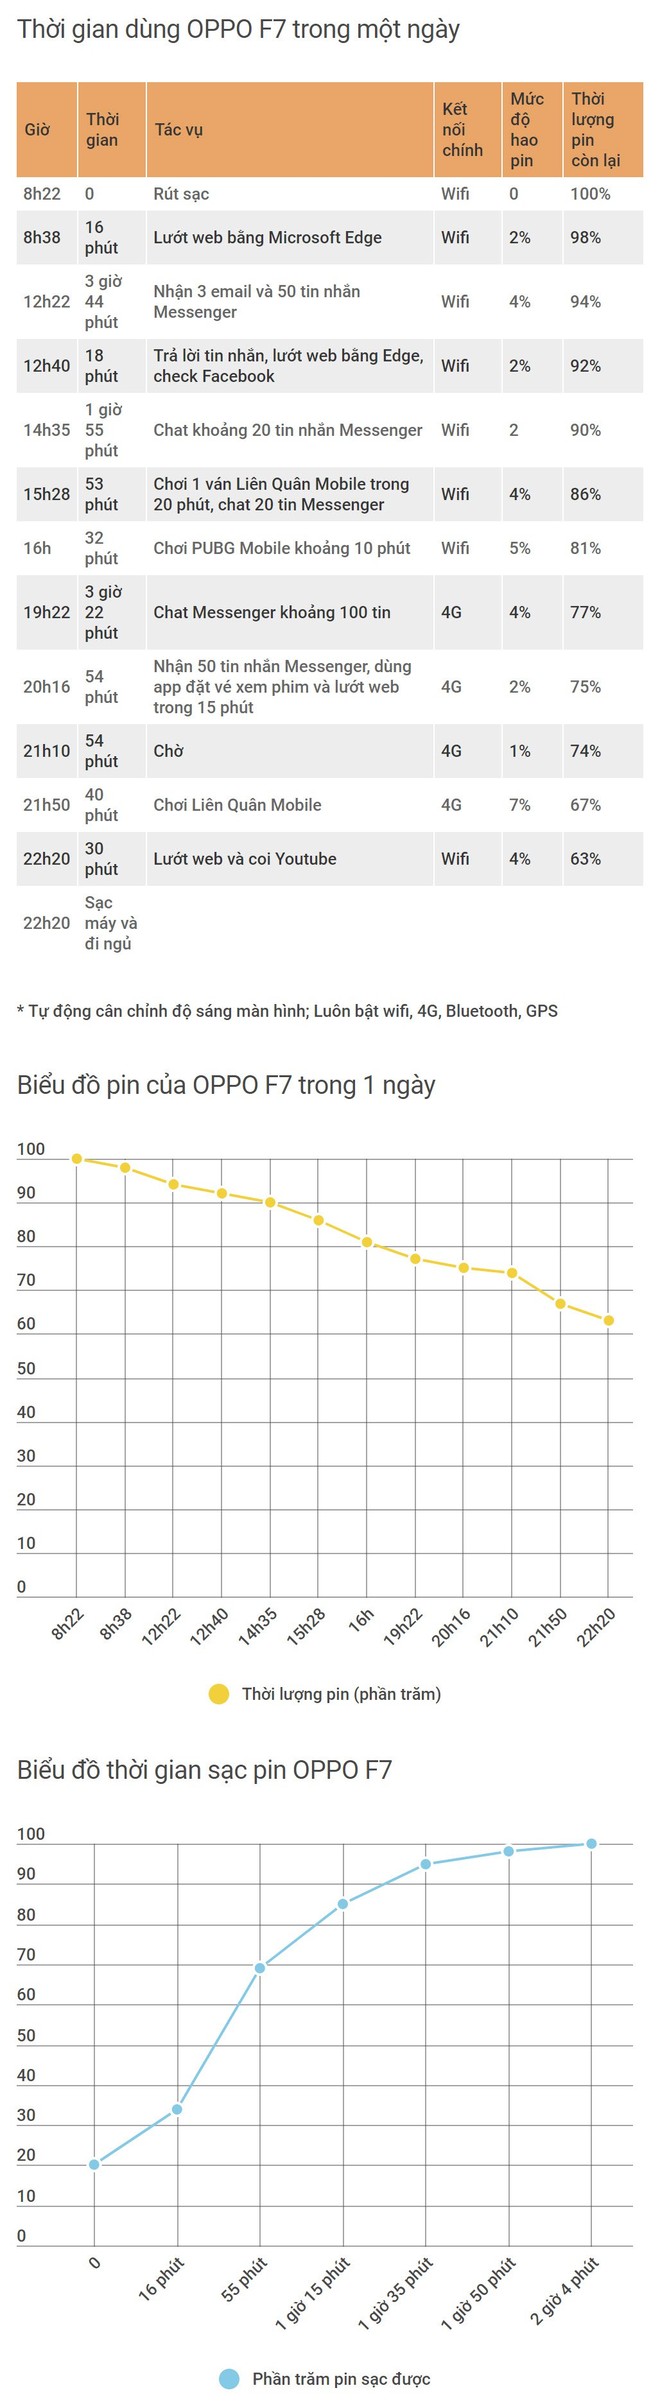 Đánh giá OPPO F7: Chưa phải hoàn hảo nhưng rất đáng cân nhắc trong phân khúc tầm trung - Ảnh 34.